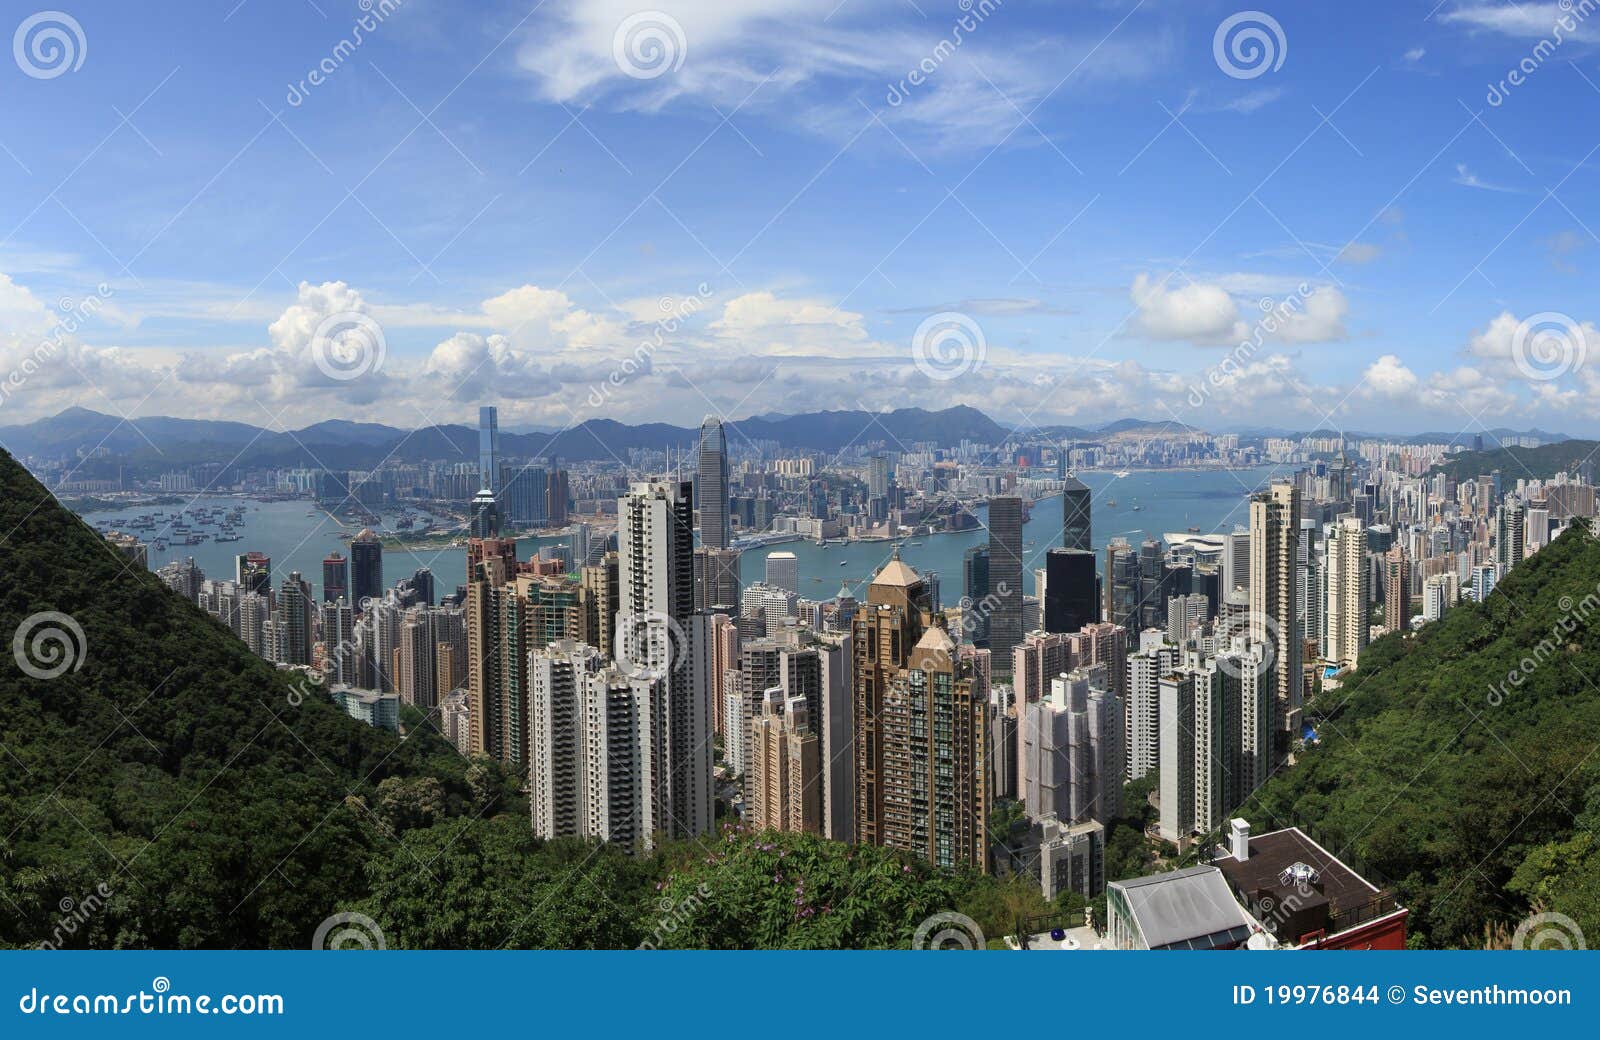 Victoria-Hafen Hong Kong redaktionelles stockbild. Bild von kong - 19976844